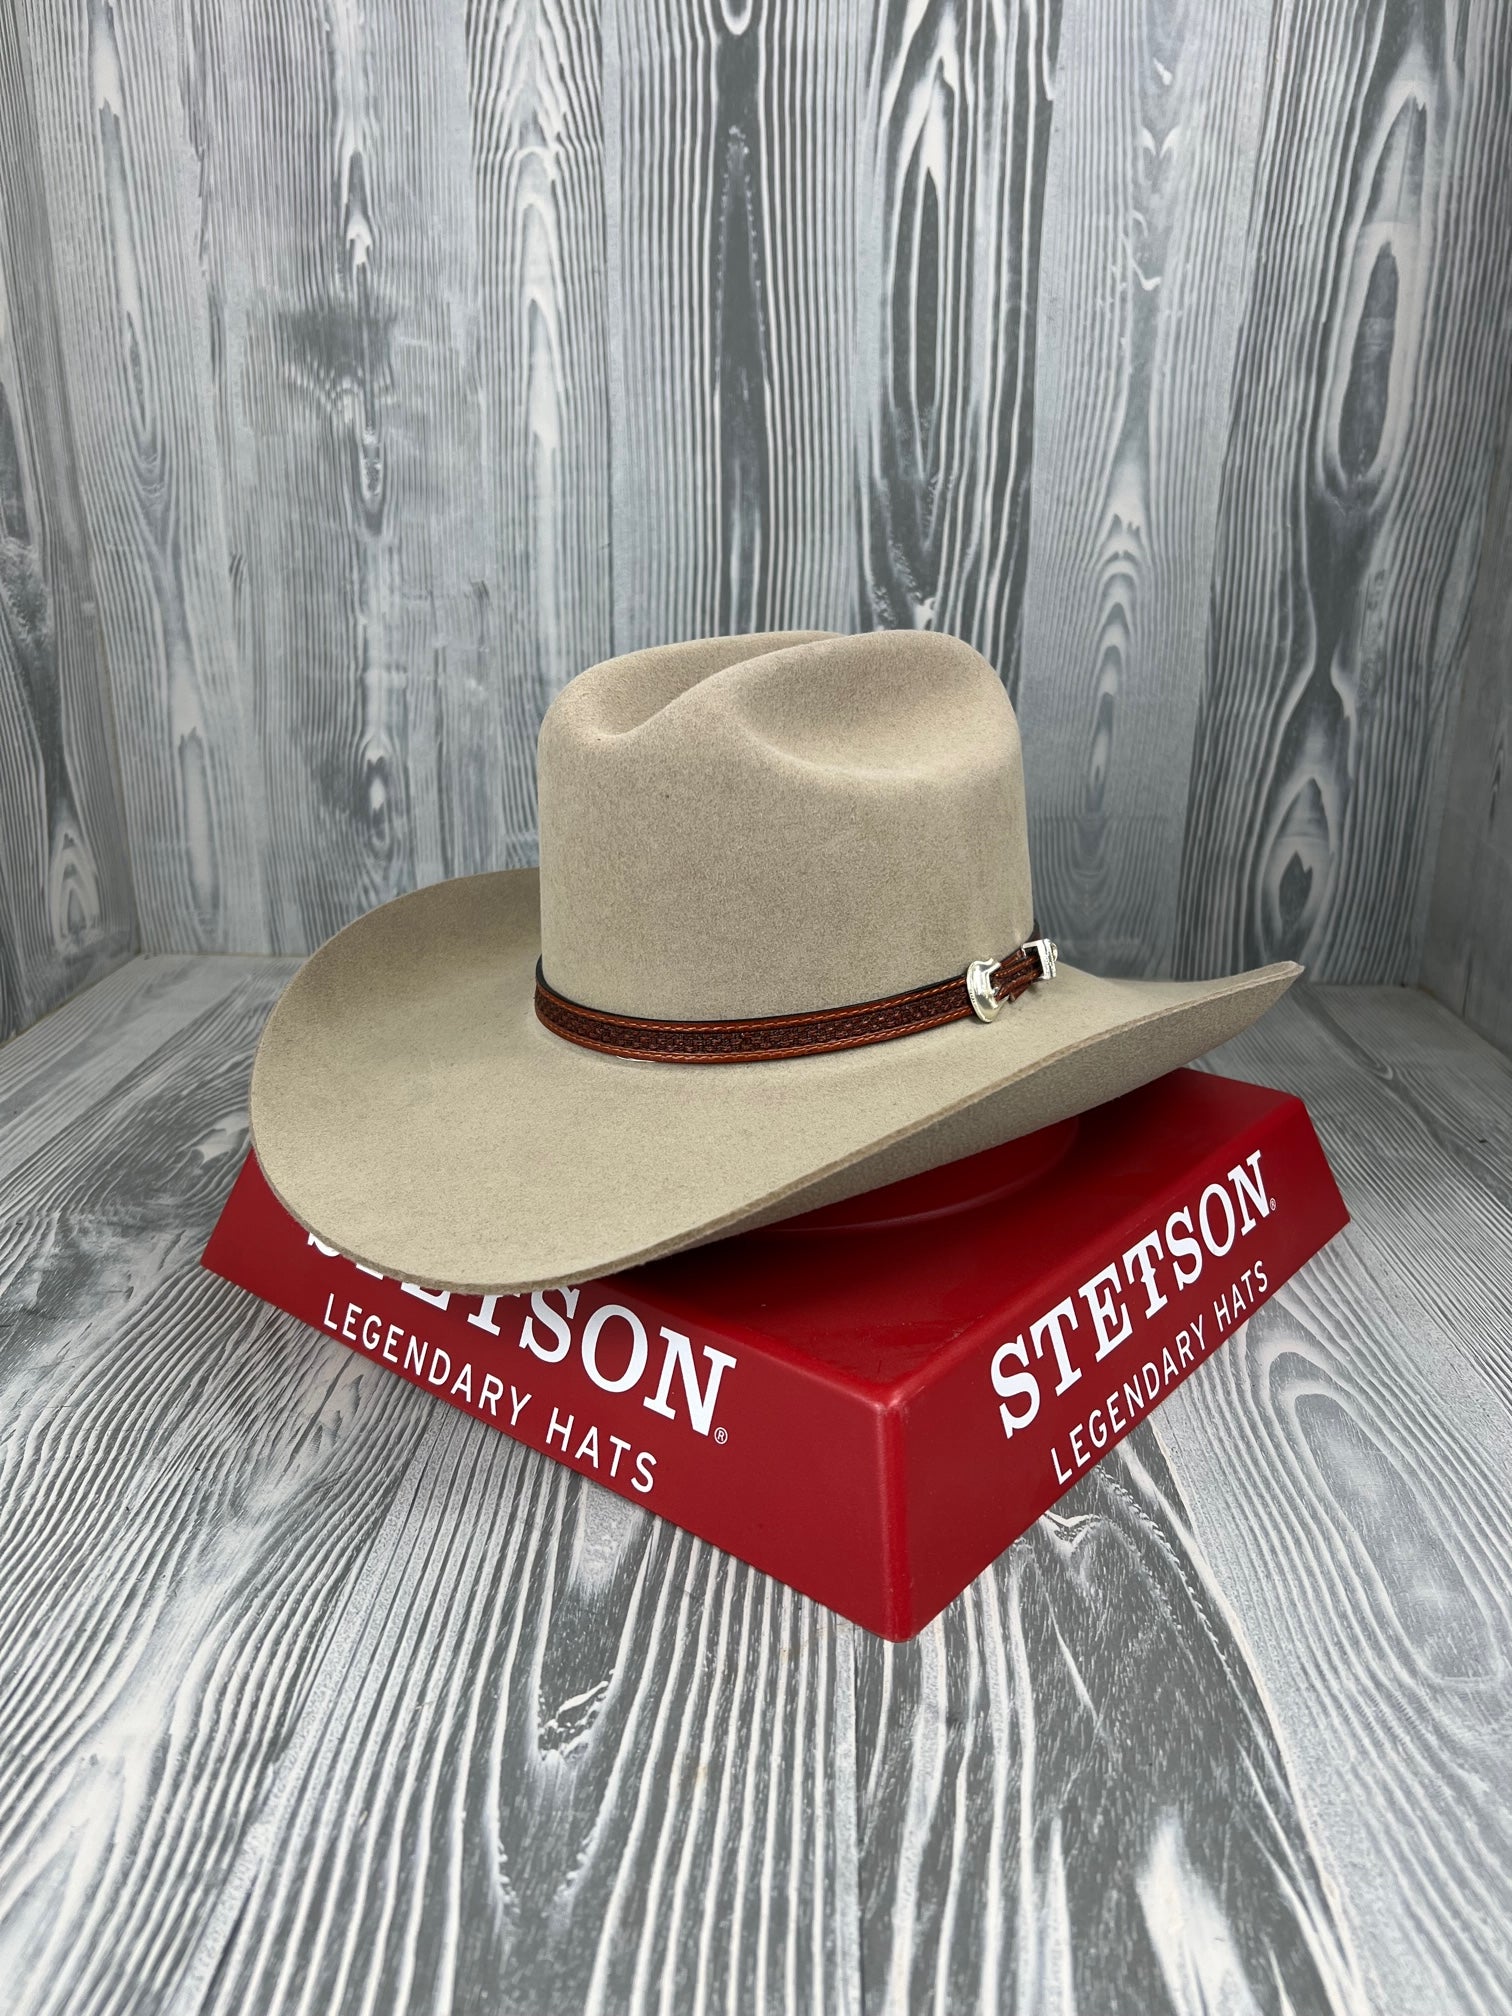 STETSON COWBOY HATS FOR MEN 7 1 2